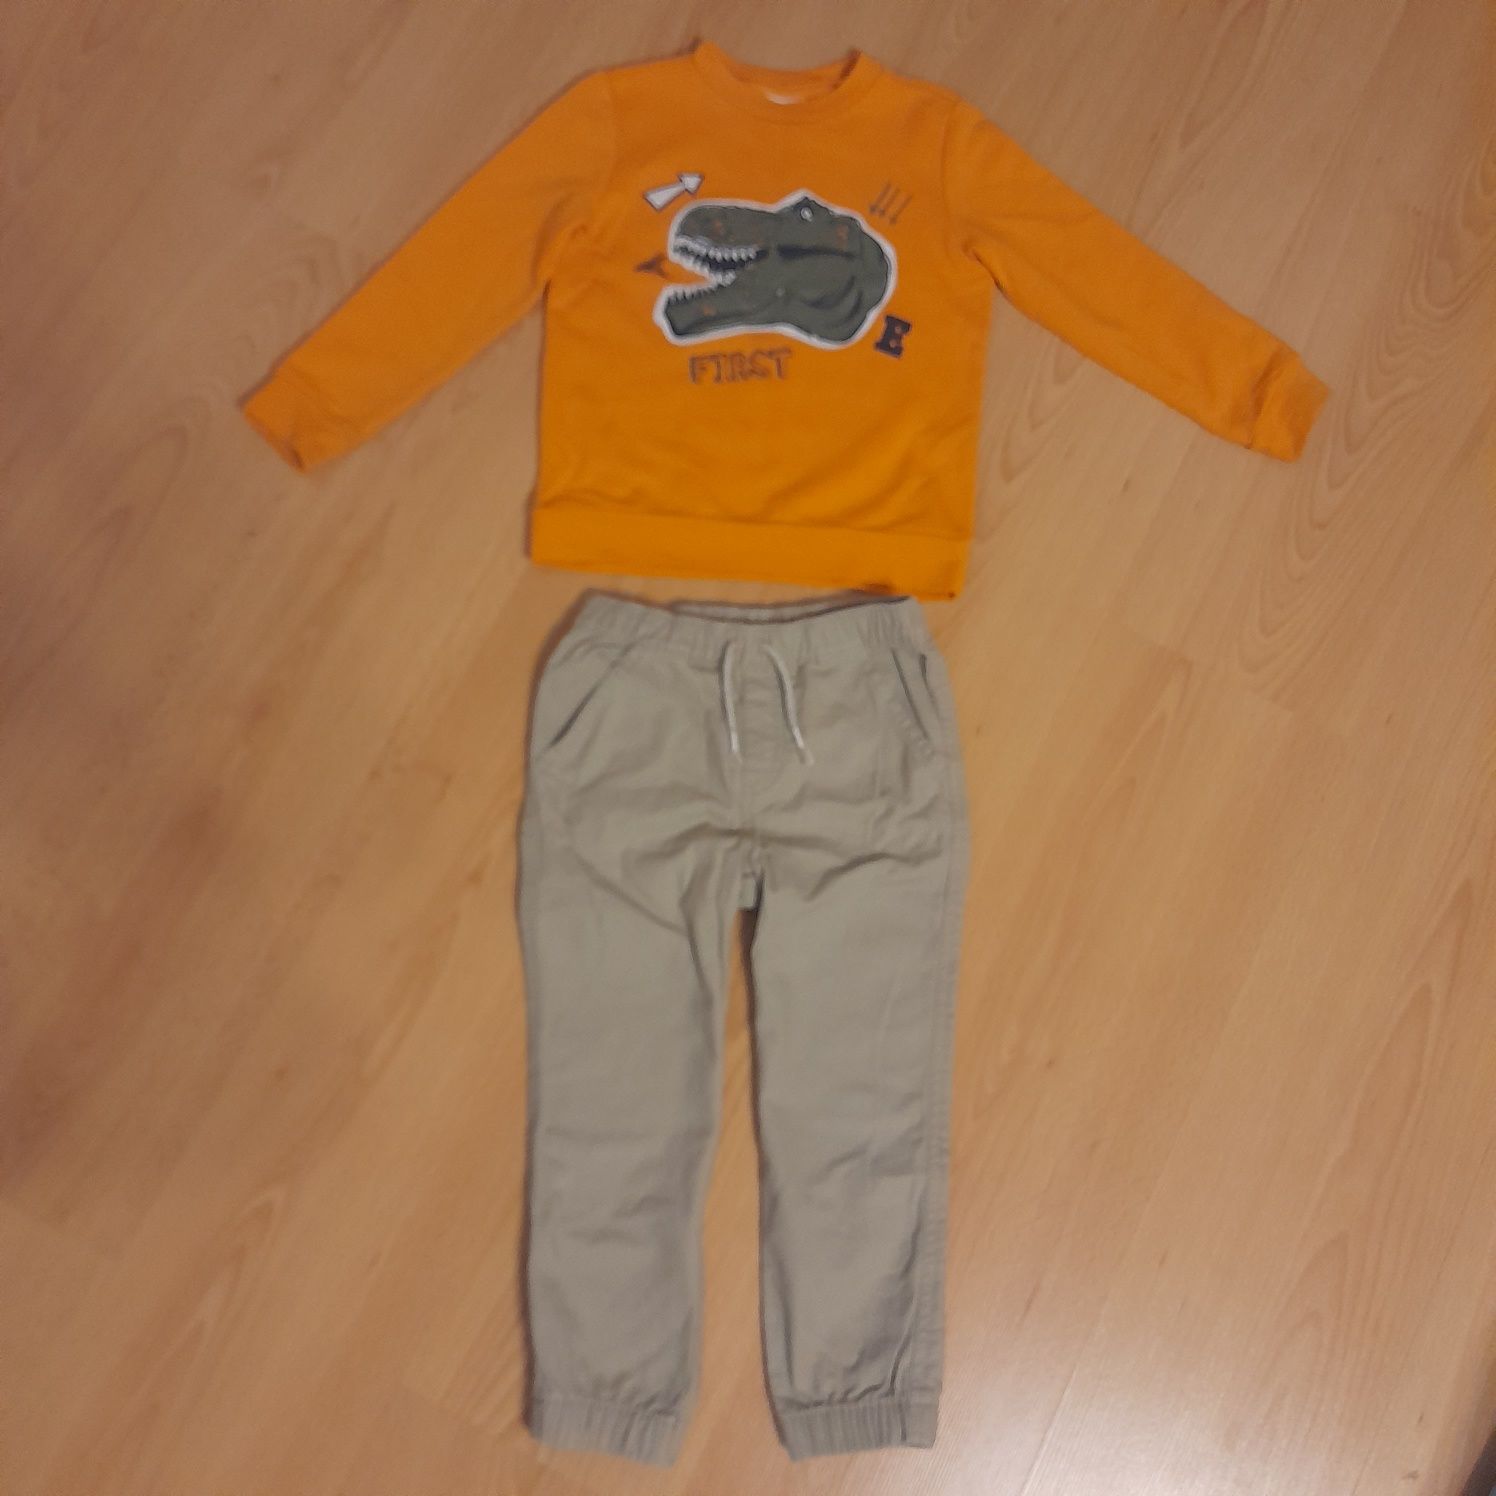 Spodnie beżowe dla chłopca 104